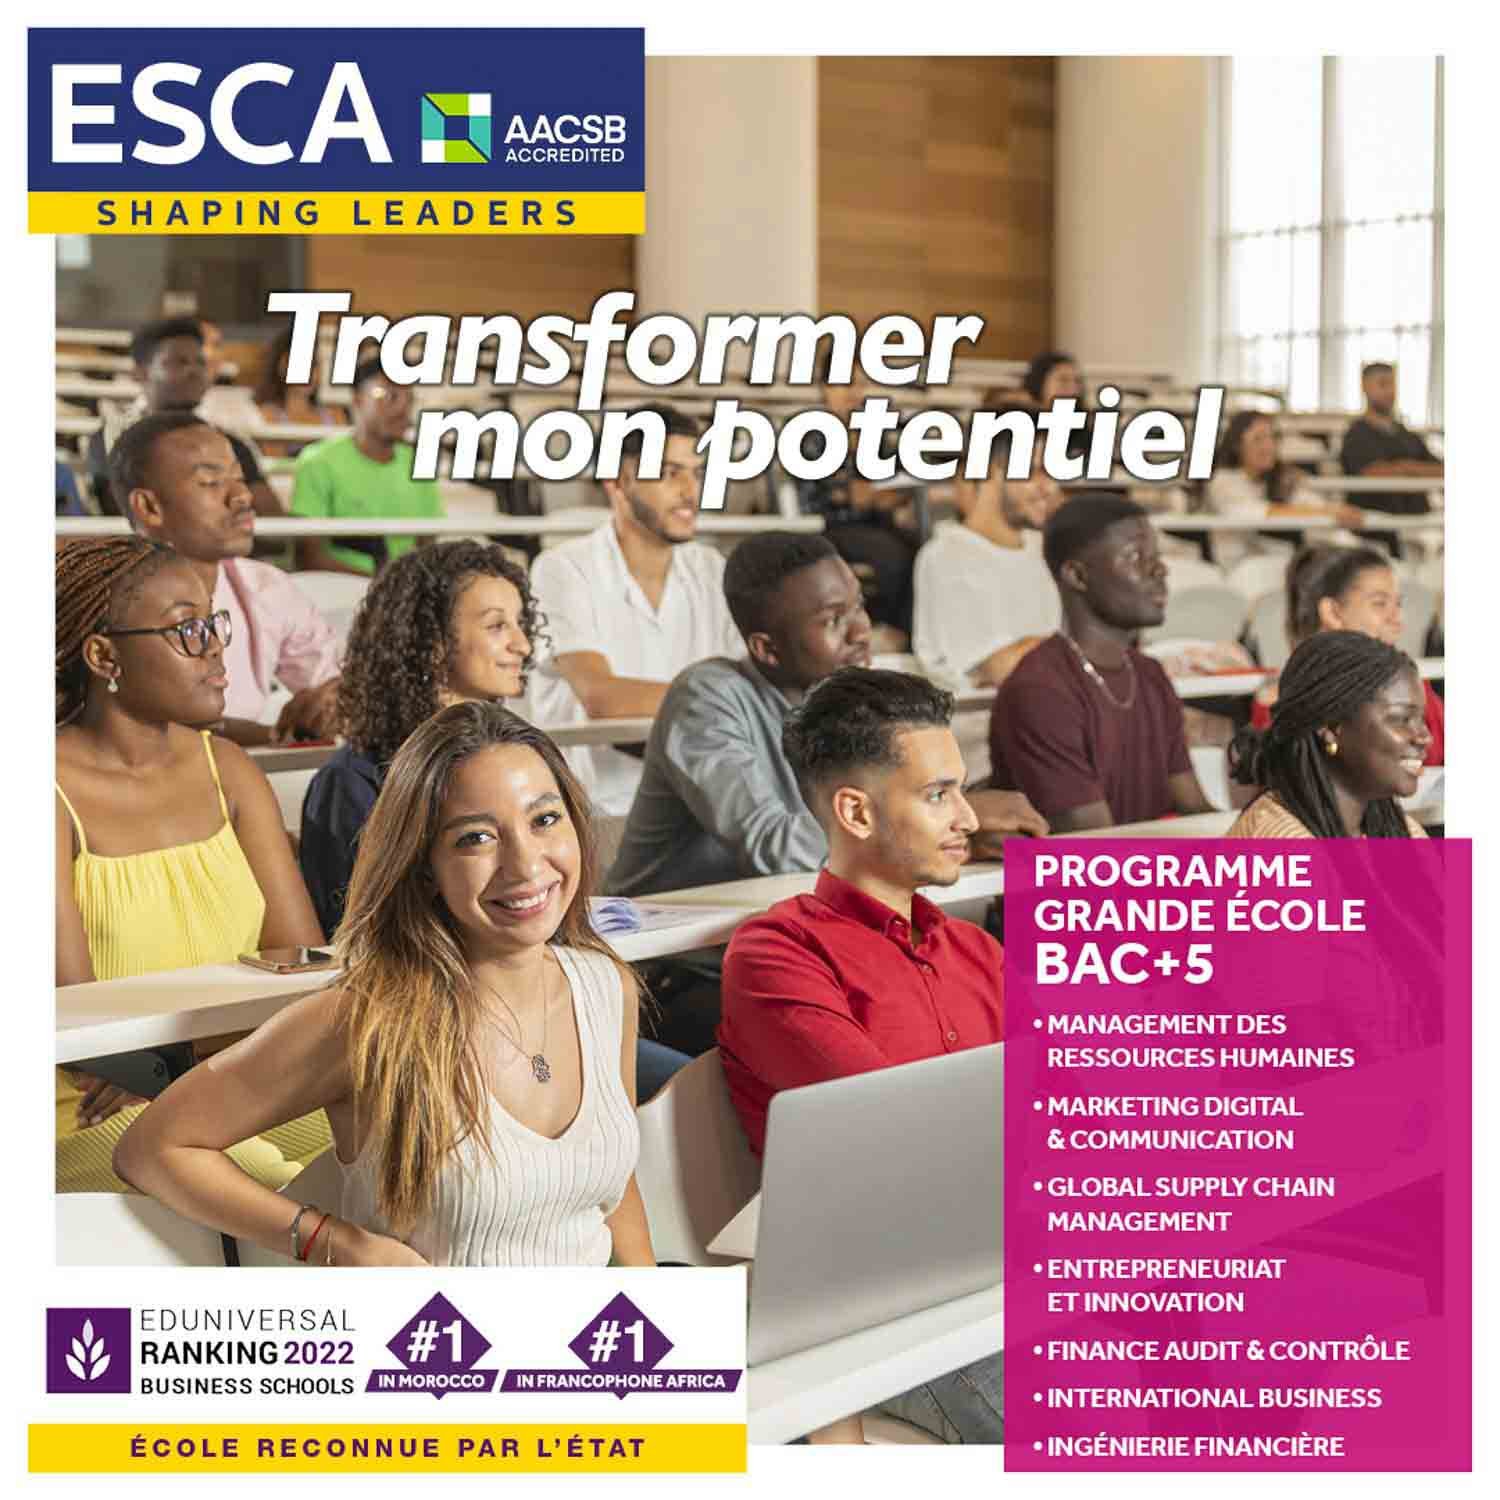 esca_transformer_mon_potentiel